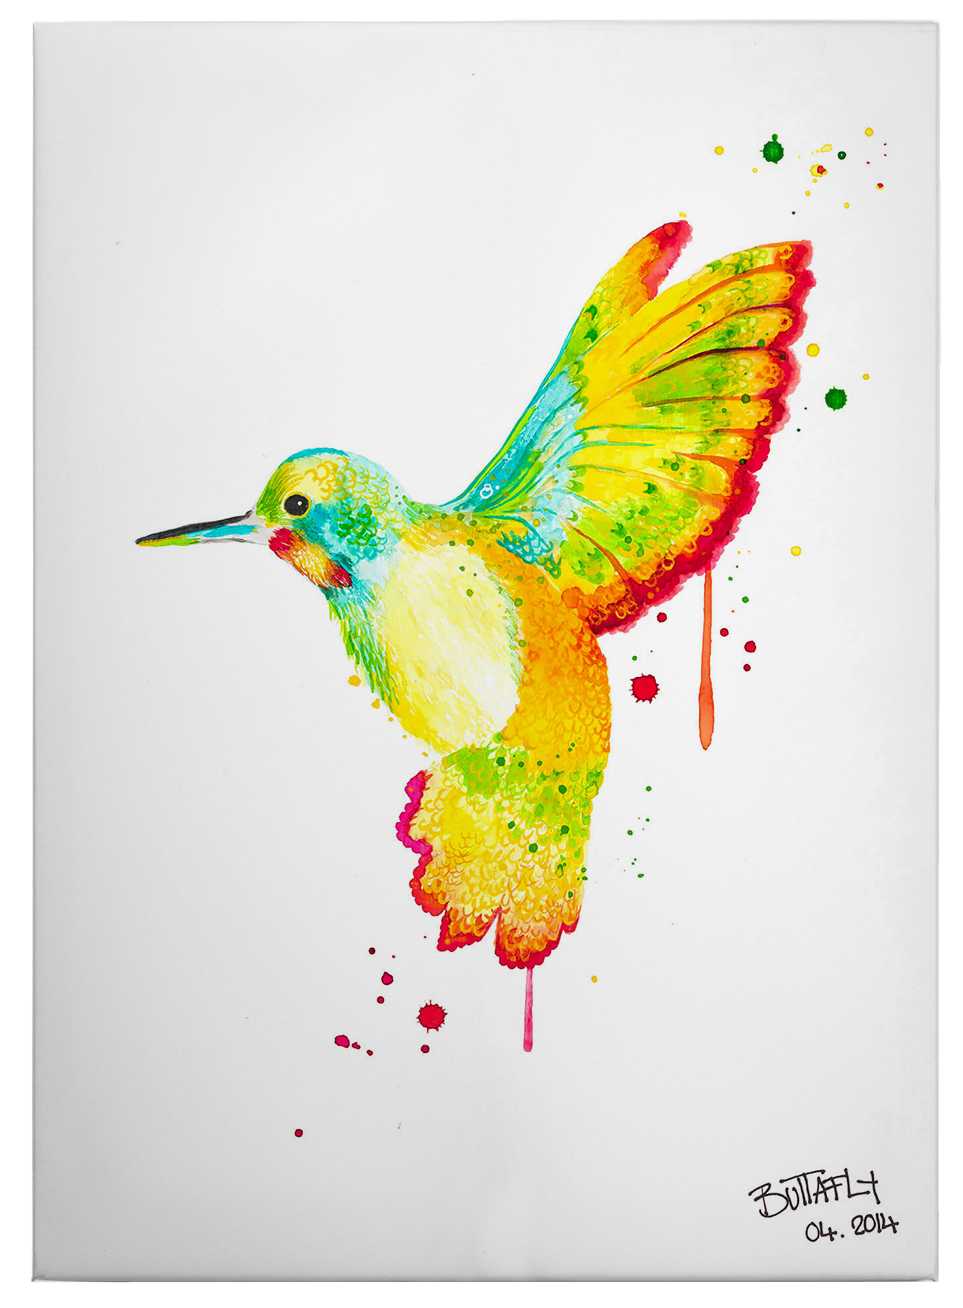             Humingbird de Buttafly, toile avec colibri multicolore - 0,50 m x 0,70 m
        